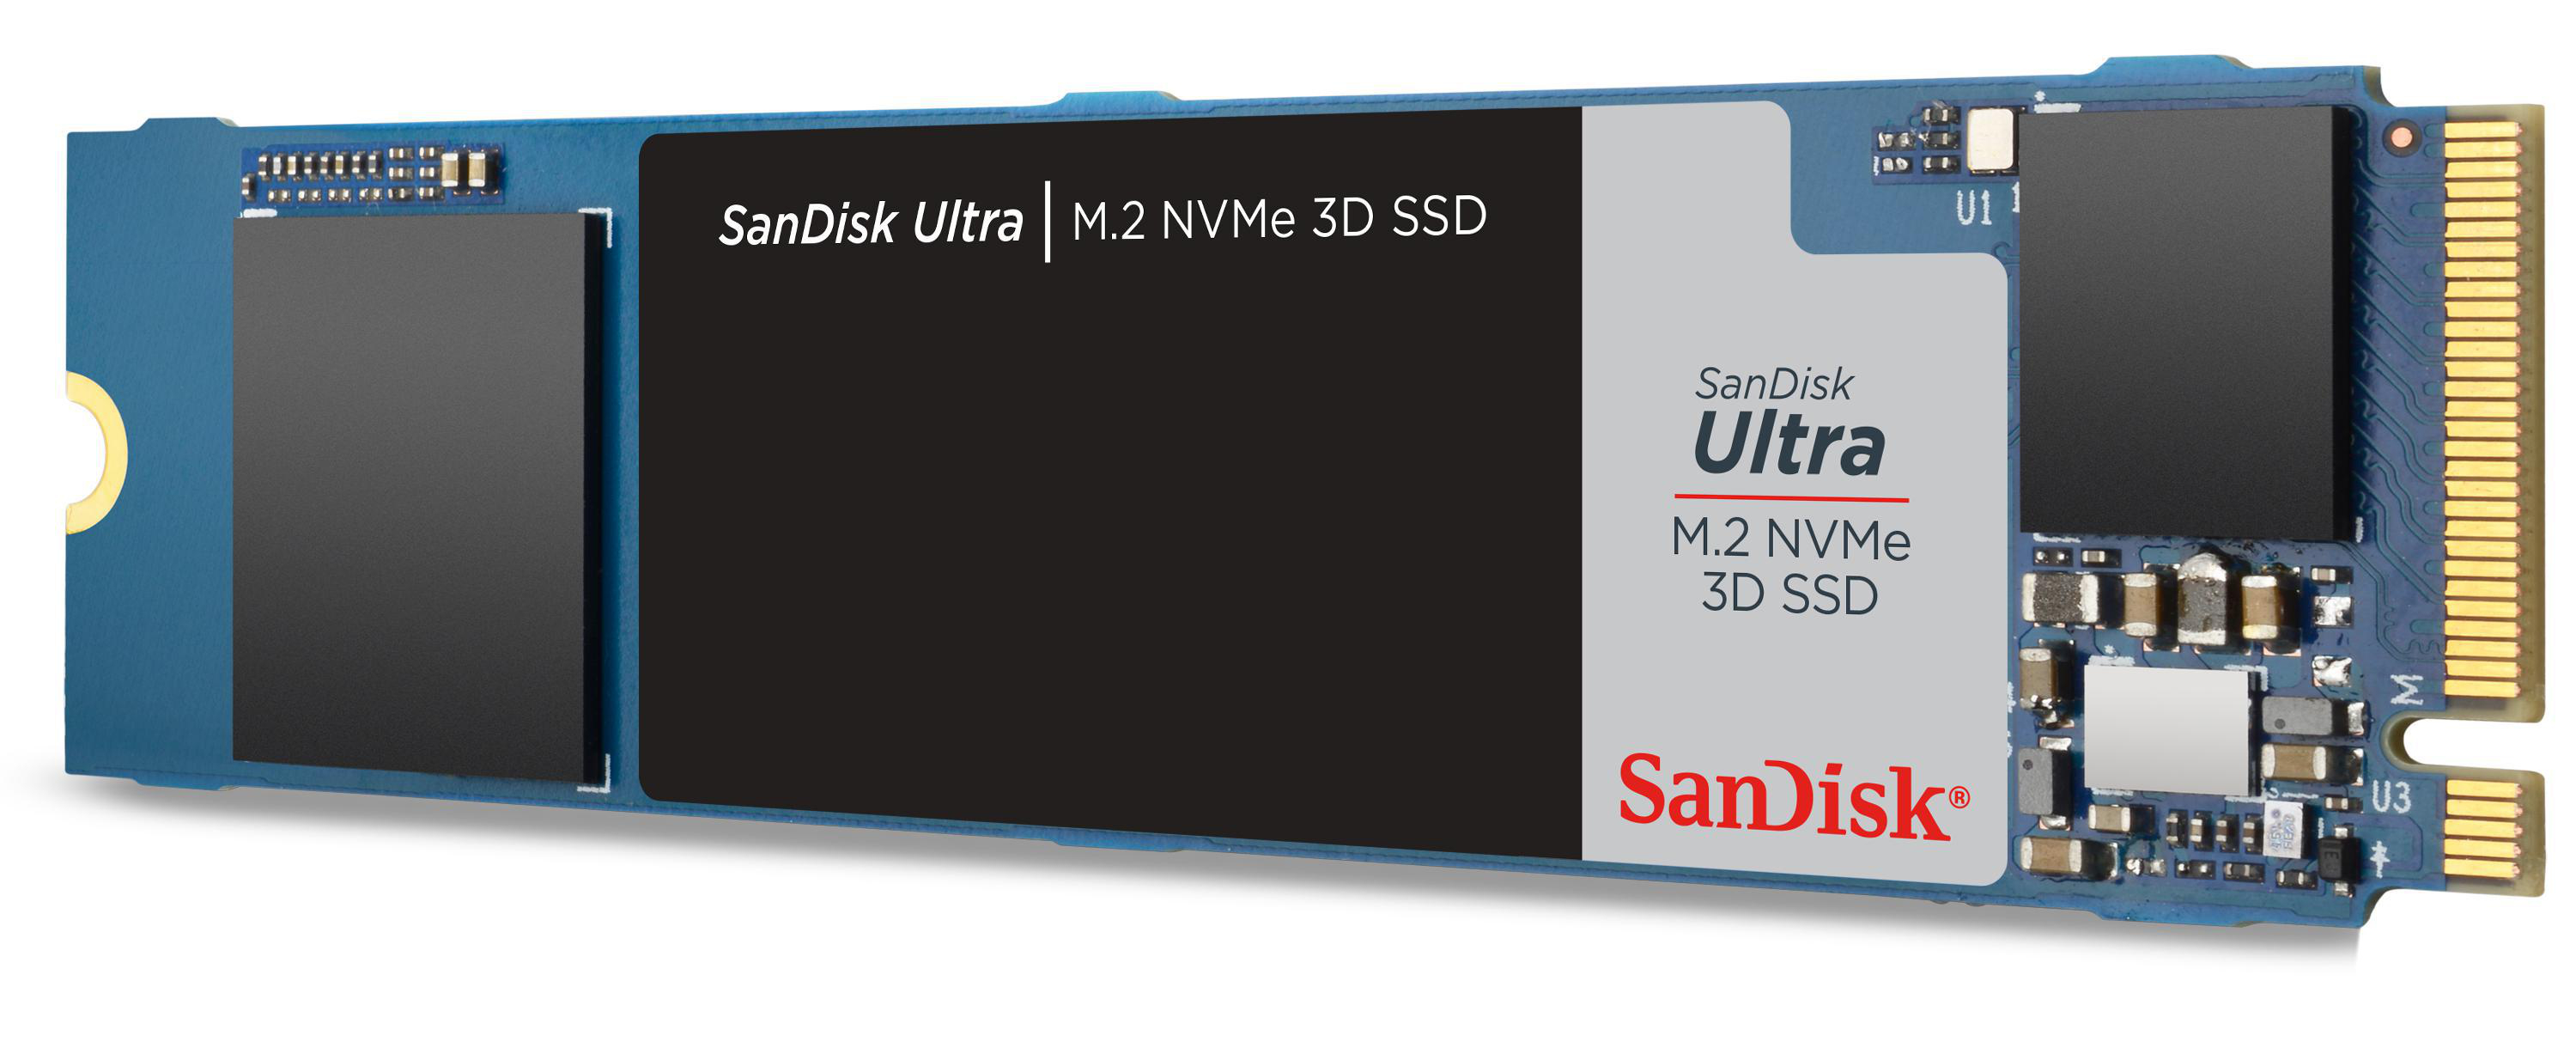 SANDISK Ultra 3D Speicher, via M.2 Interner intern Speicher 1 NVMe, TB